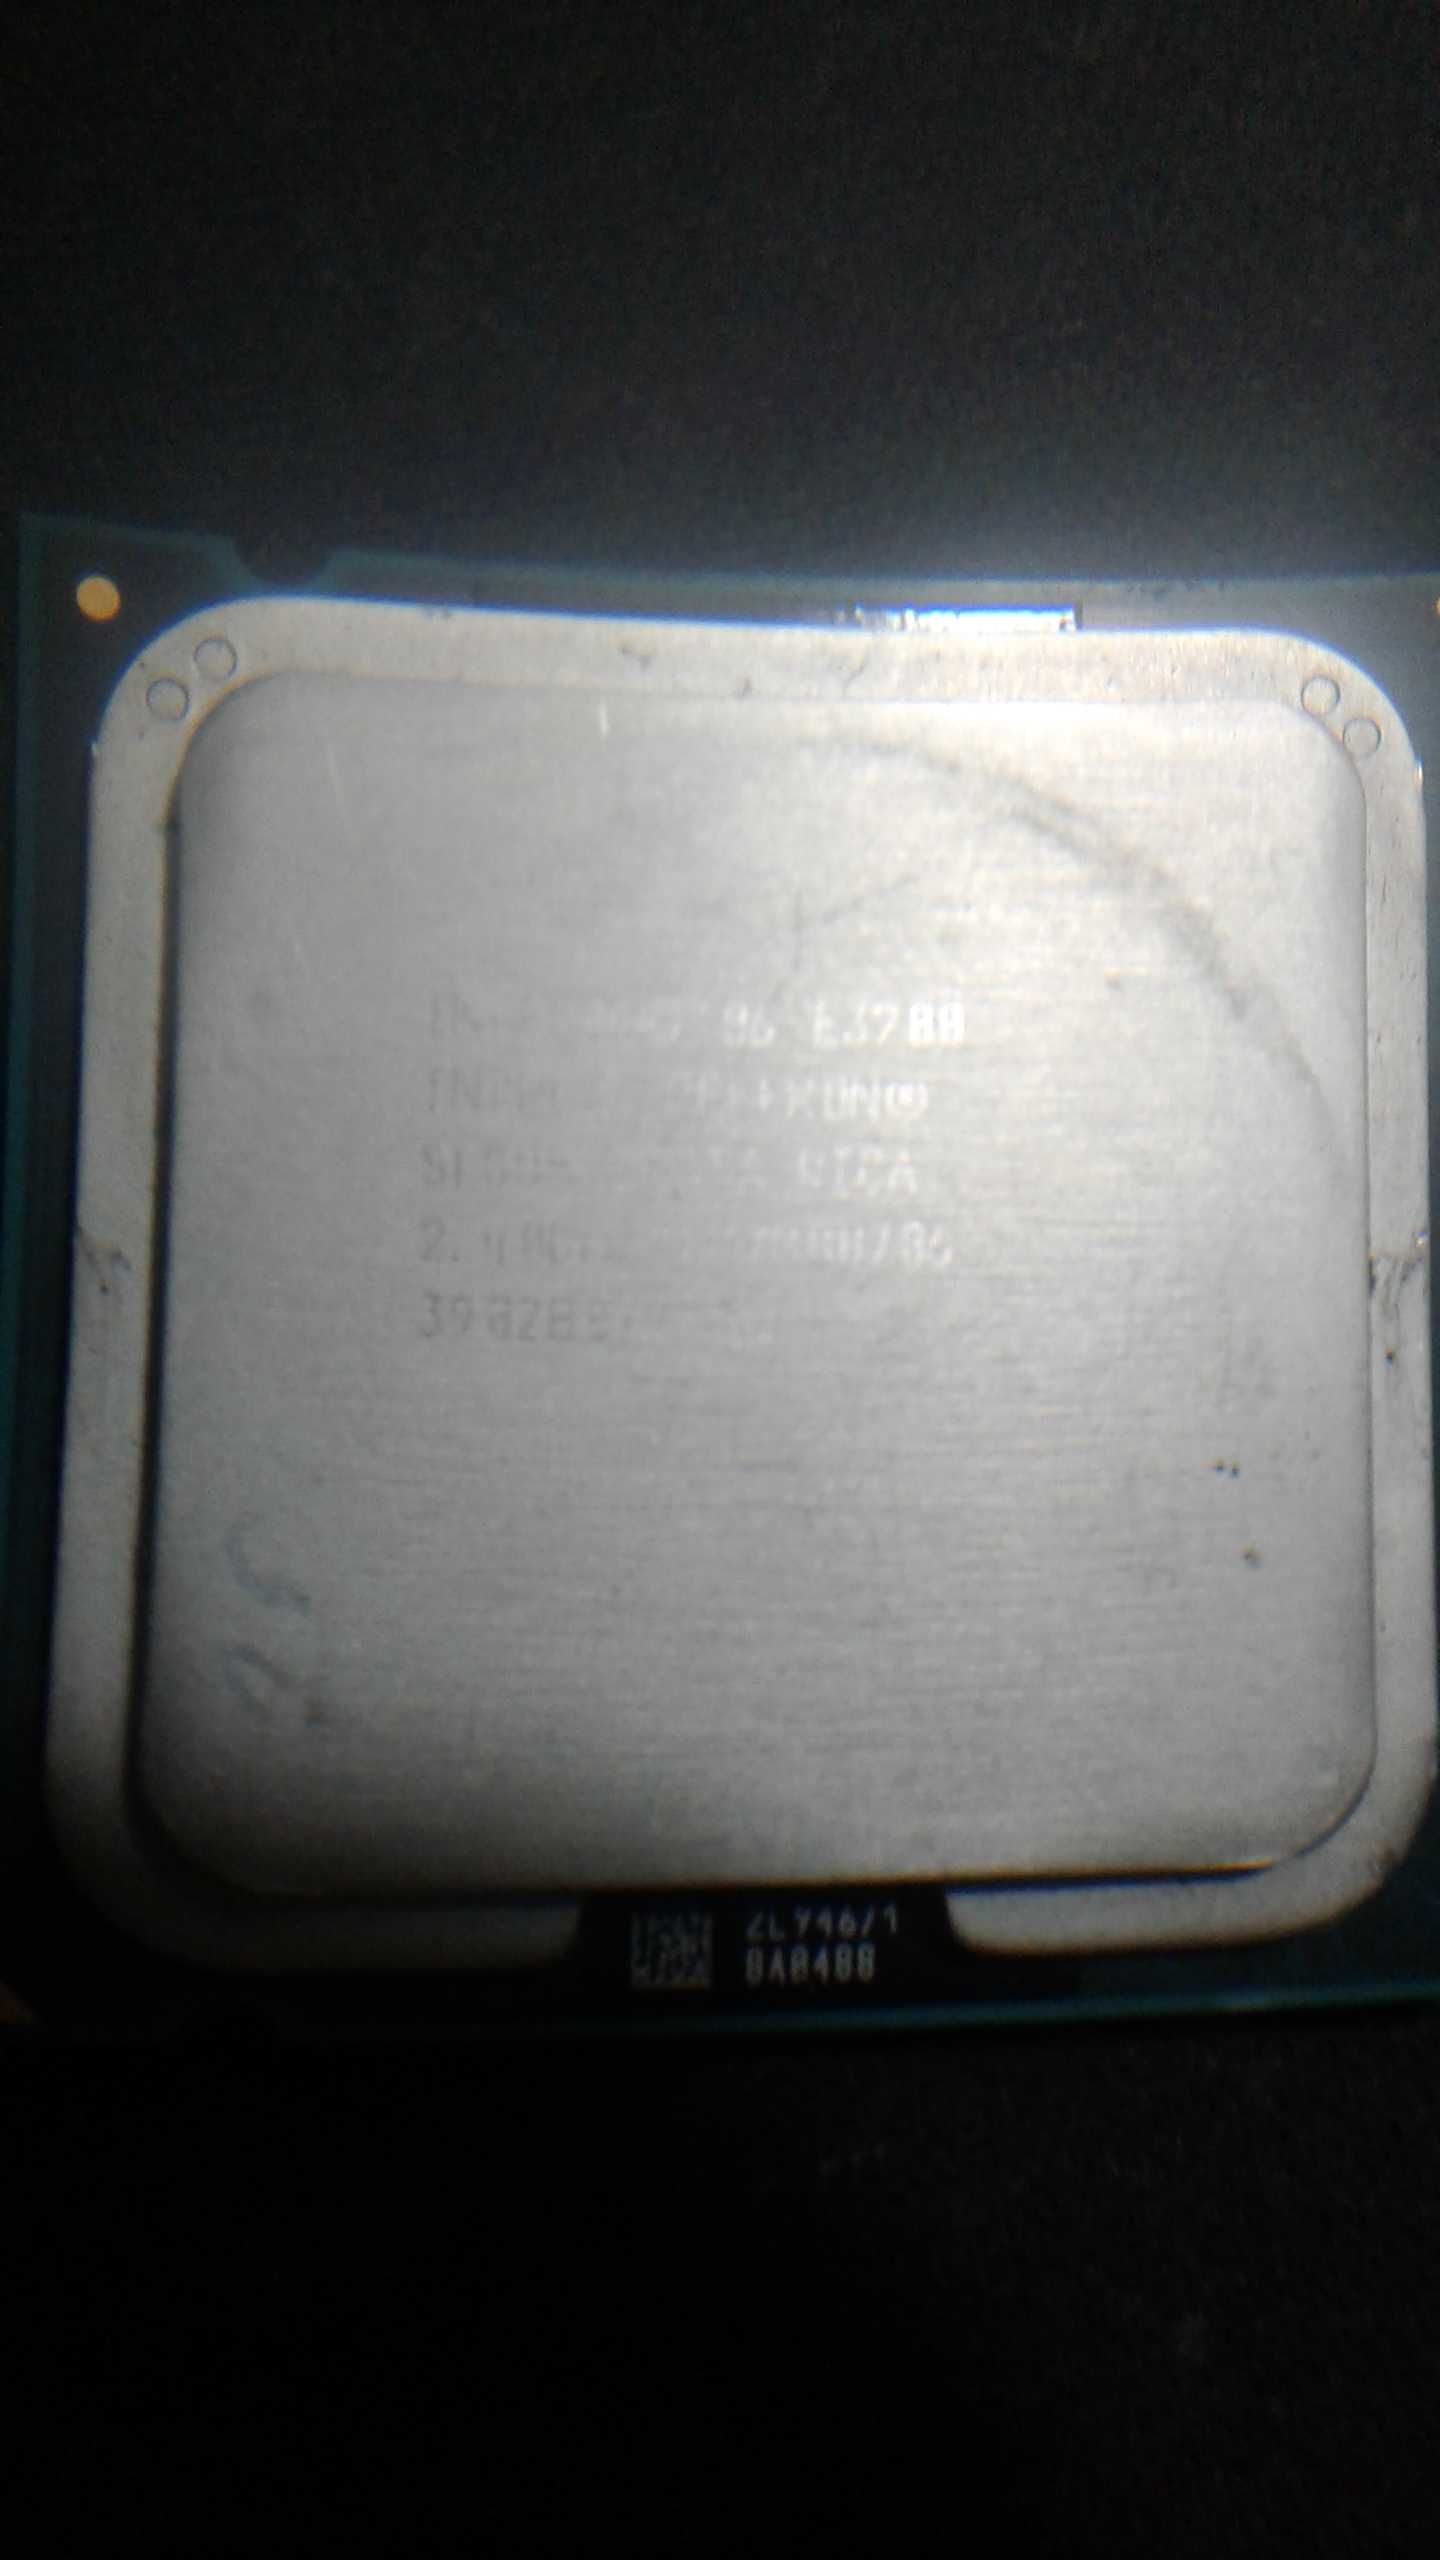 Процессоры Celeron 1.80 GHz. Pentium 1.6 ghz. 775 Сокет